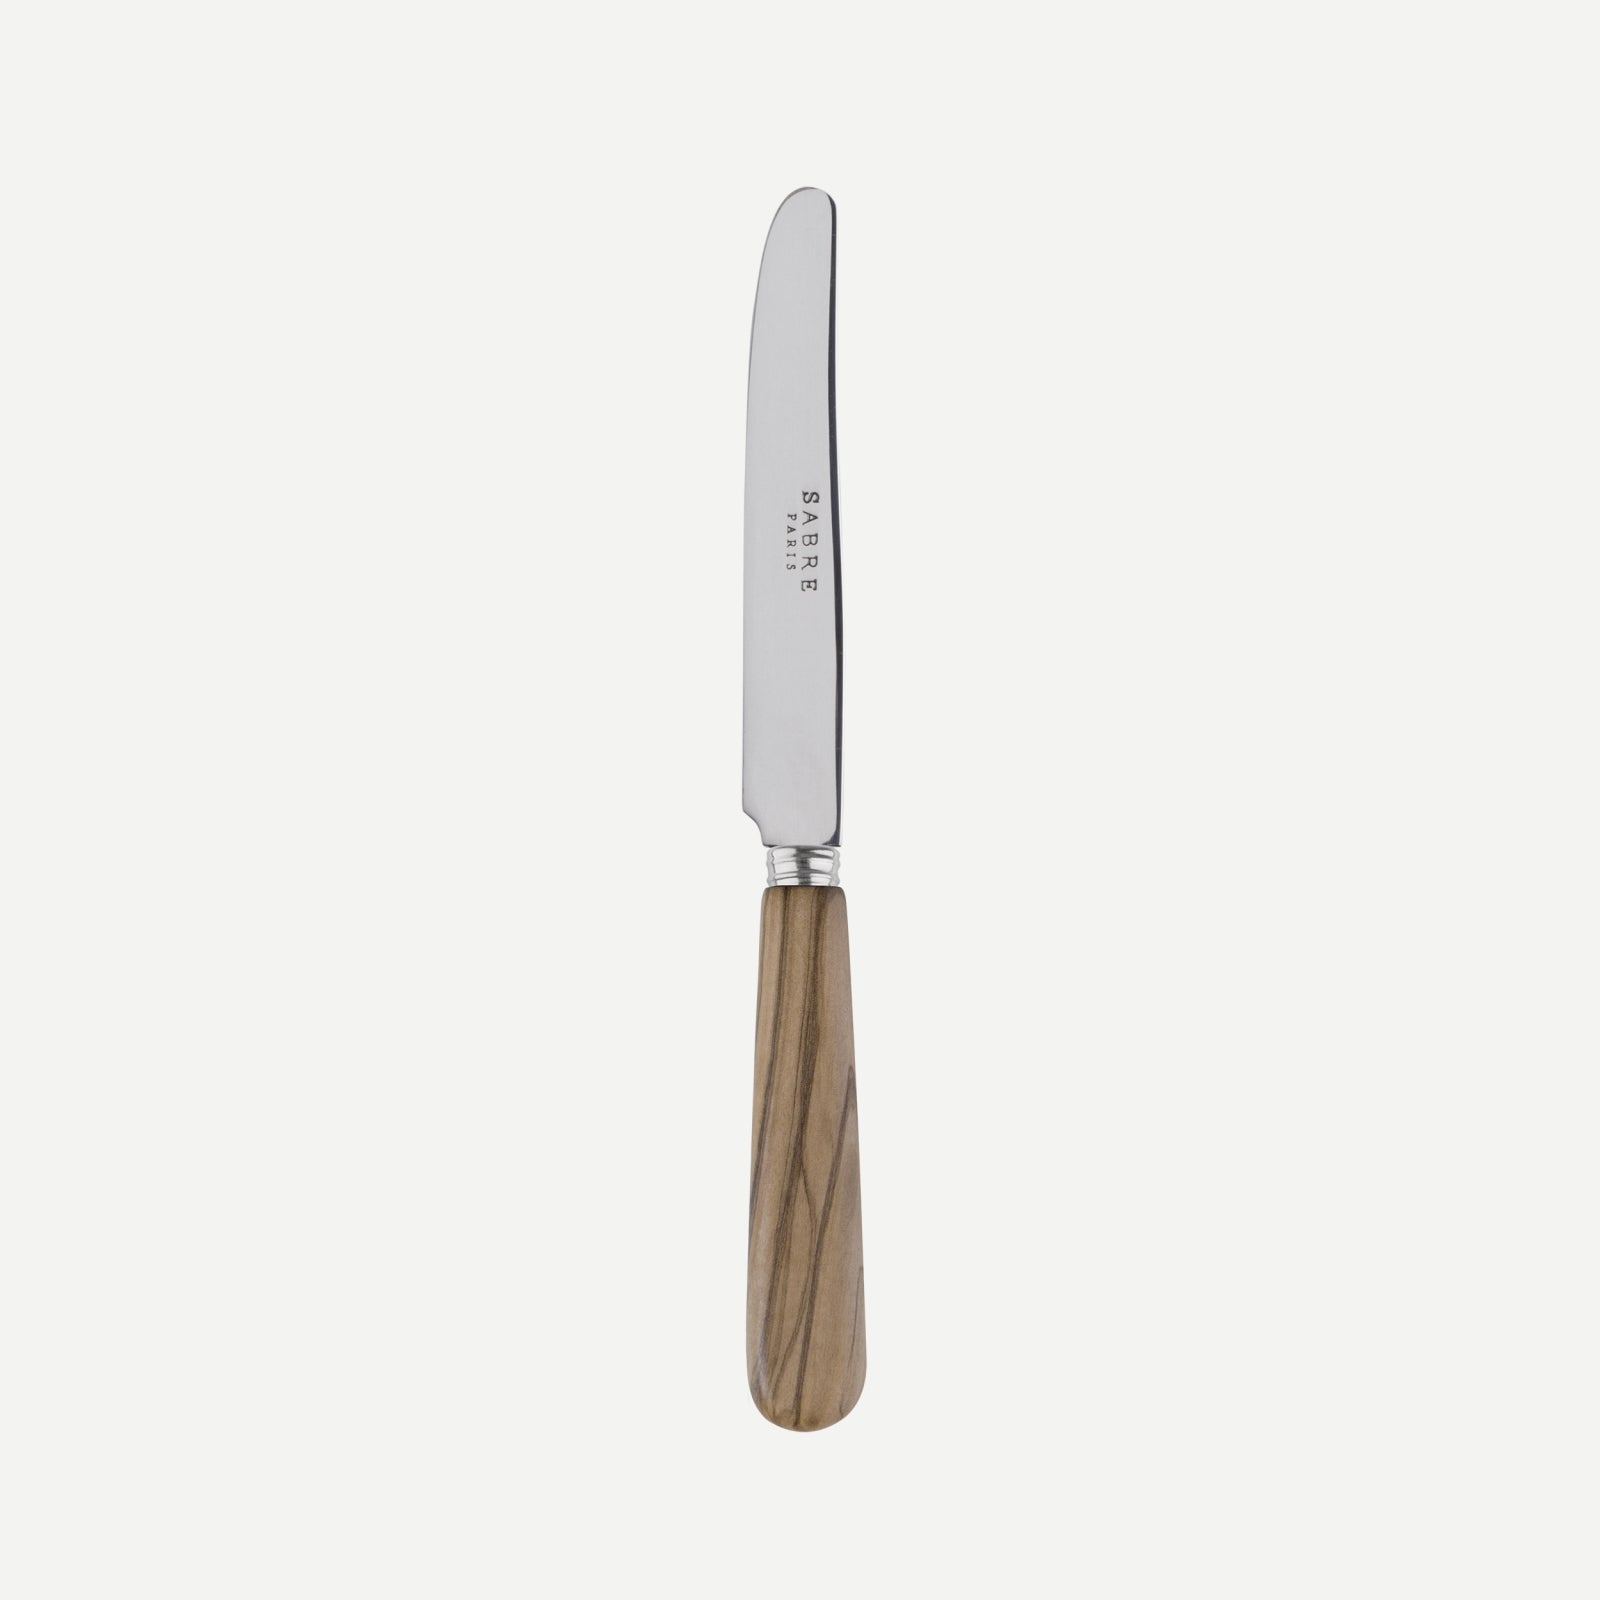 Breakfast knife - Lavandou - Olive tree wood